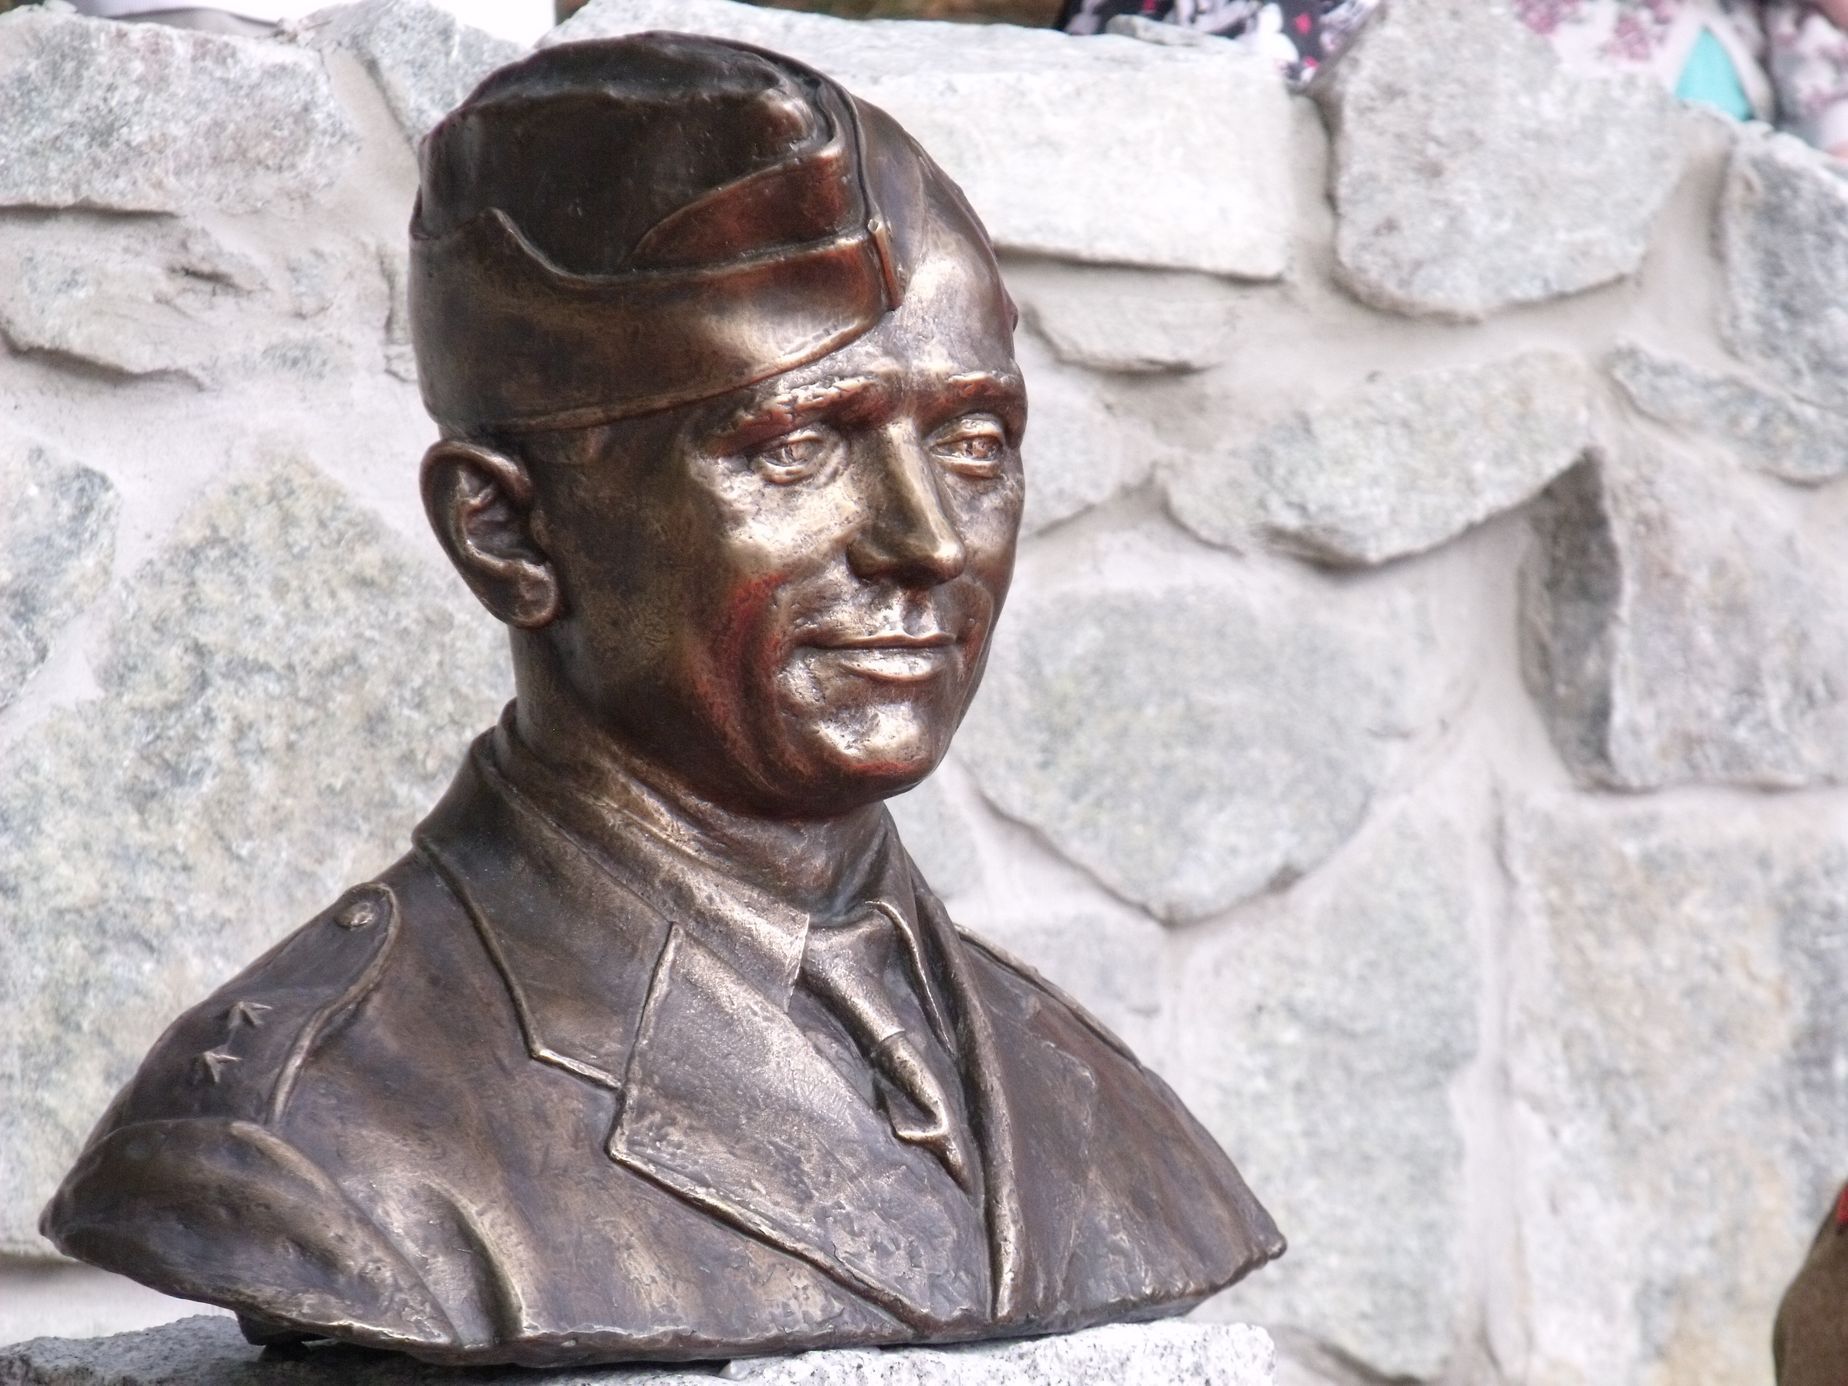 V rodišti parašutisty Josefa Gabčíka byl odhalen jeho usmívající se pomník